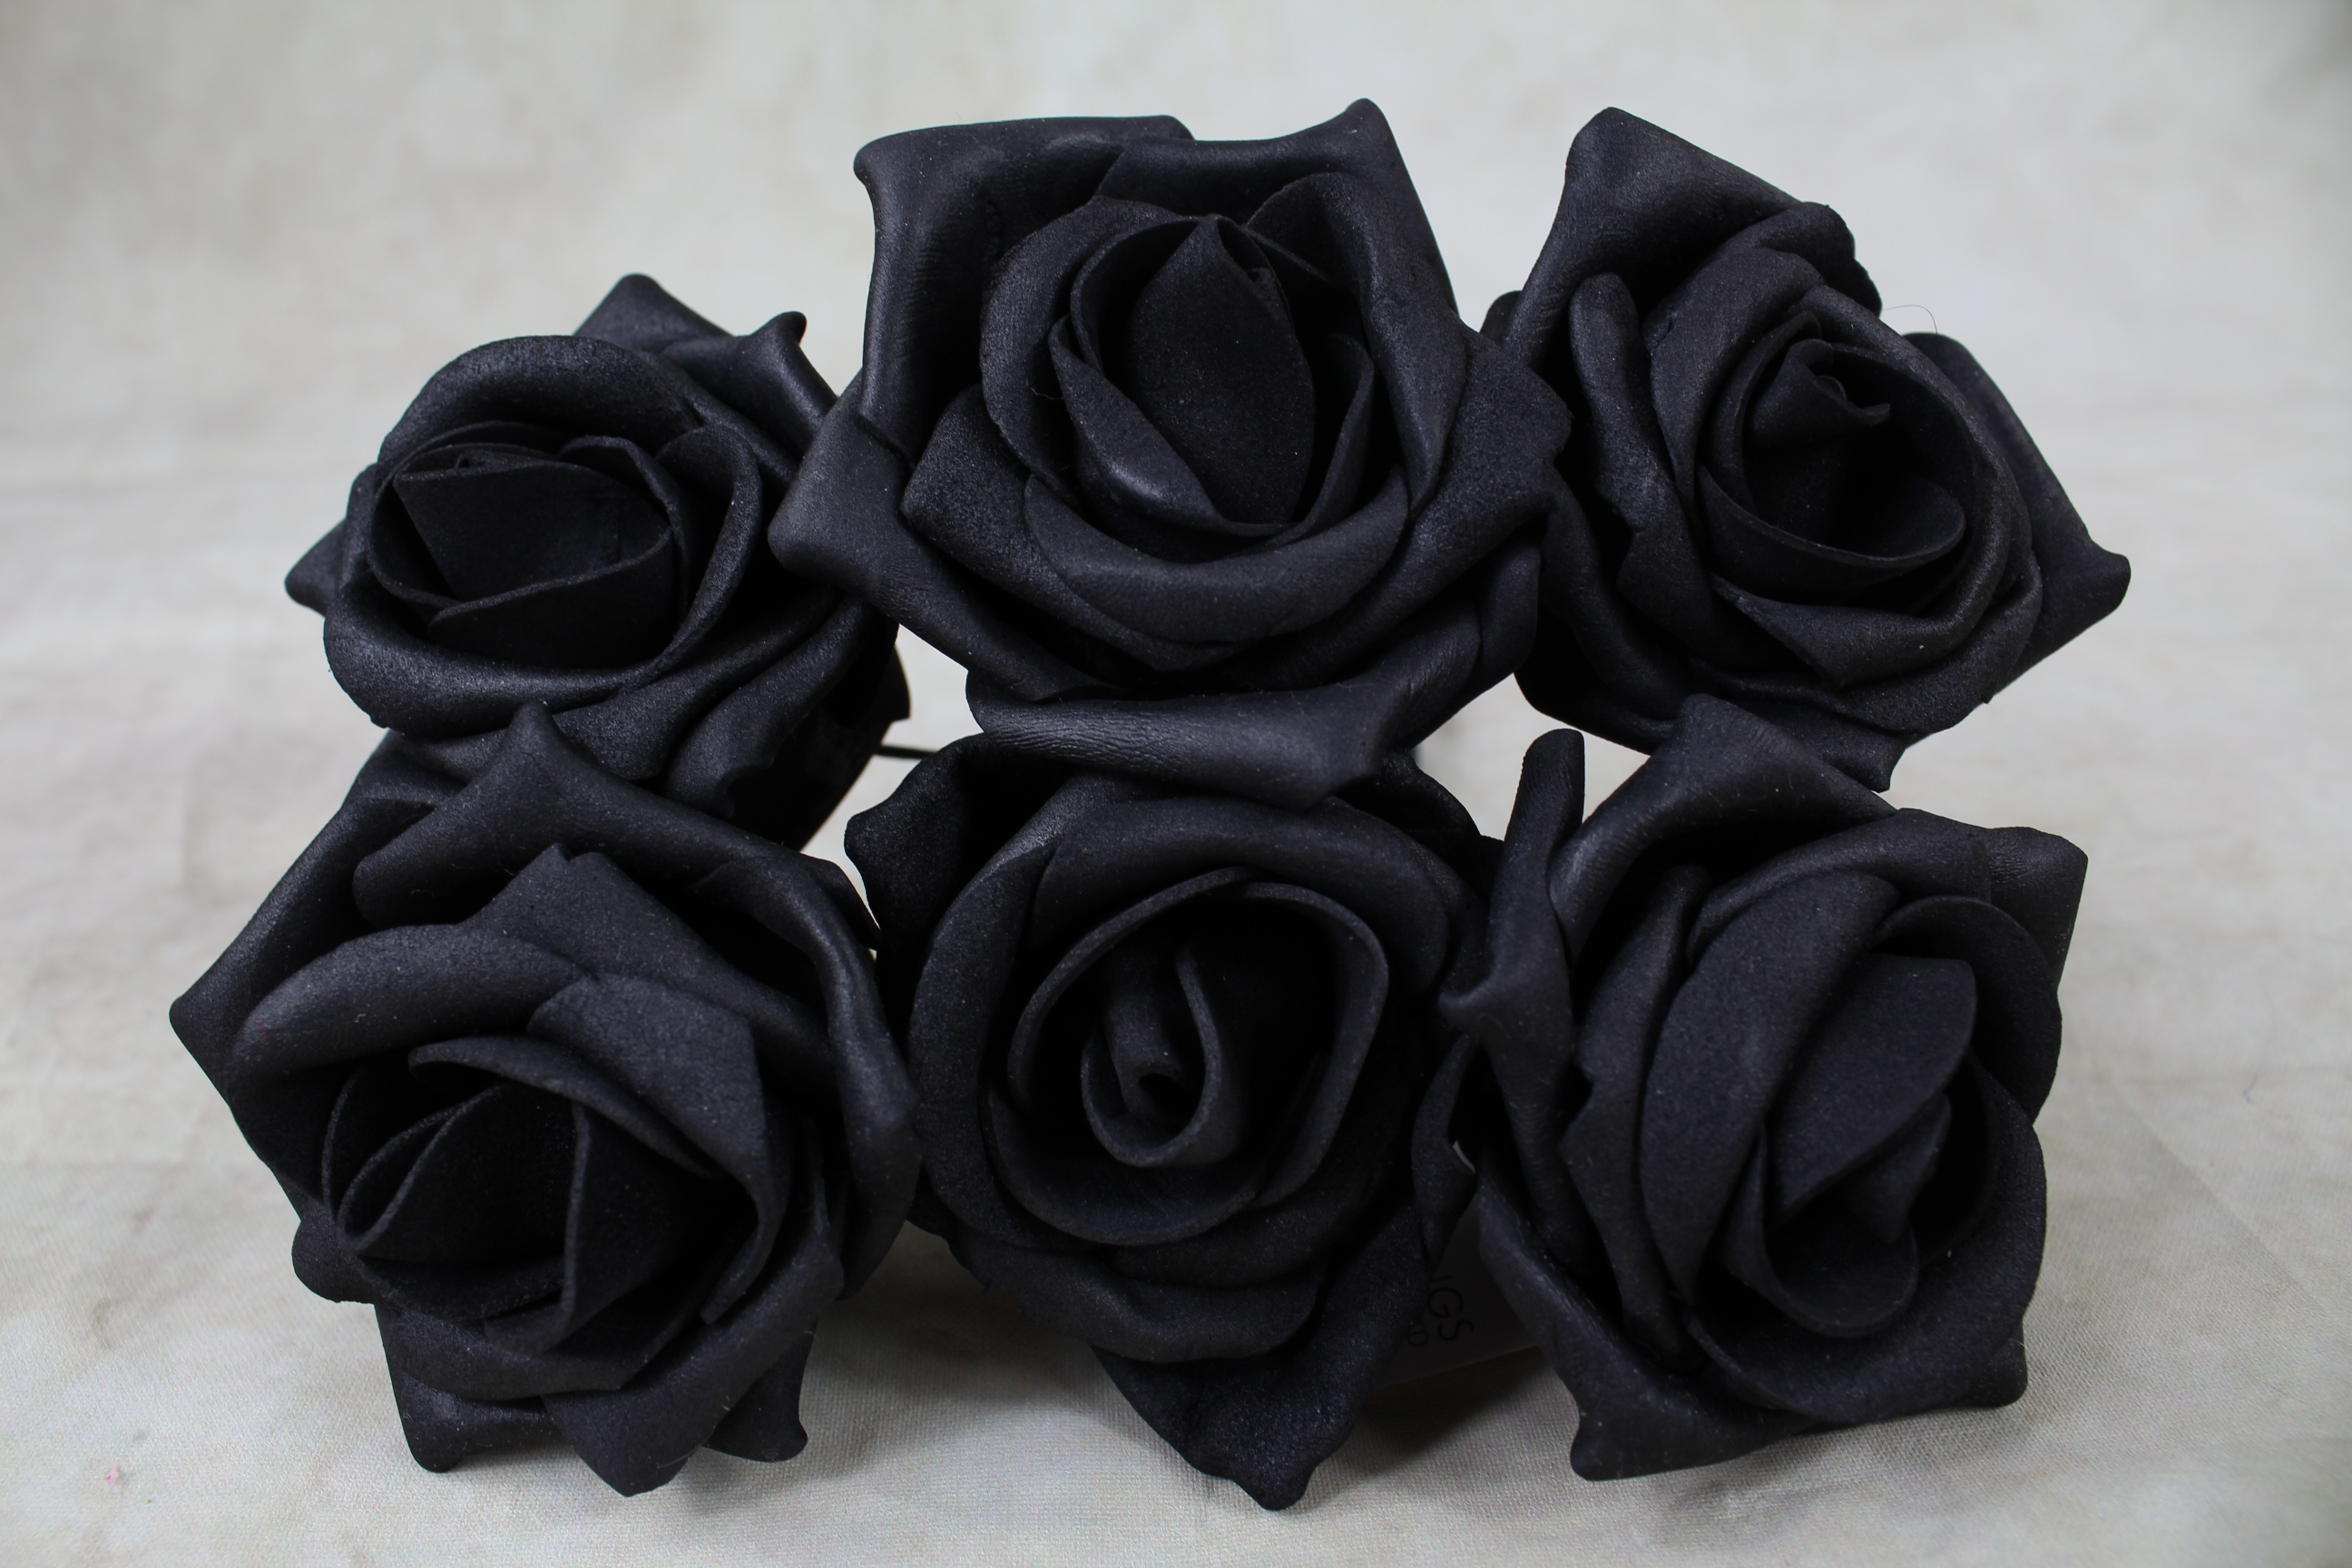 6 x 5.5cm Foam Rose Bunches